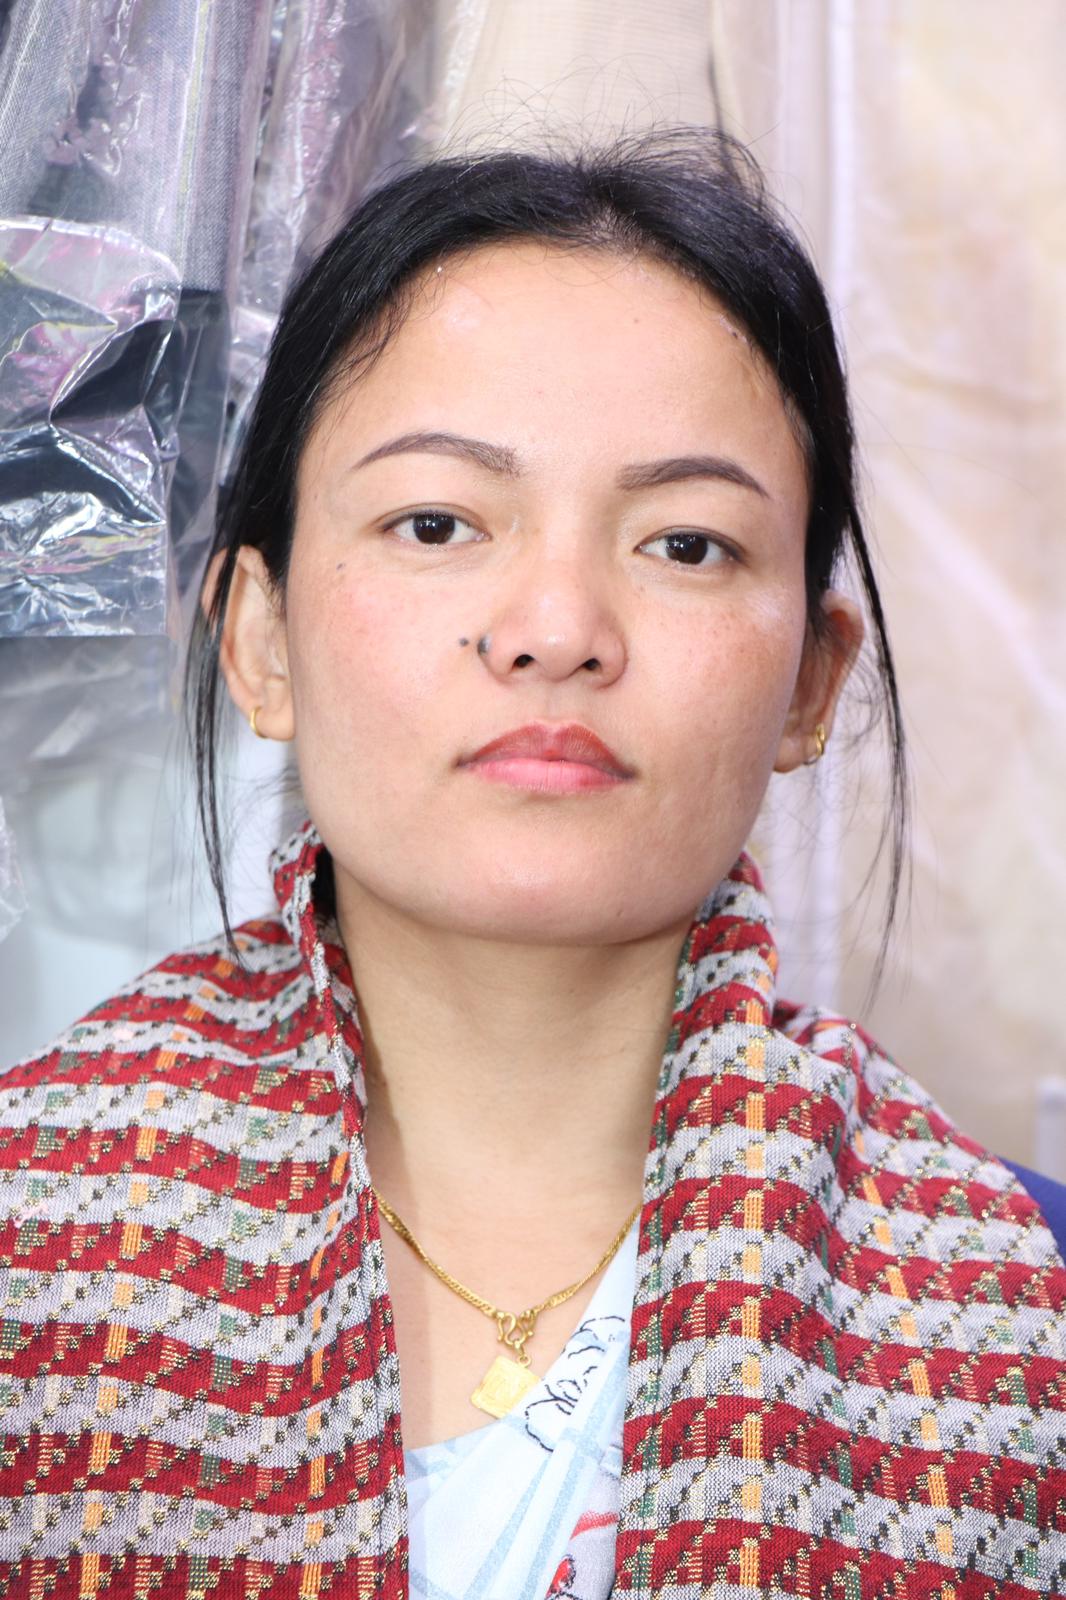 Nanu-Ghale-Women-Vice-President-1702818582.jpg